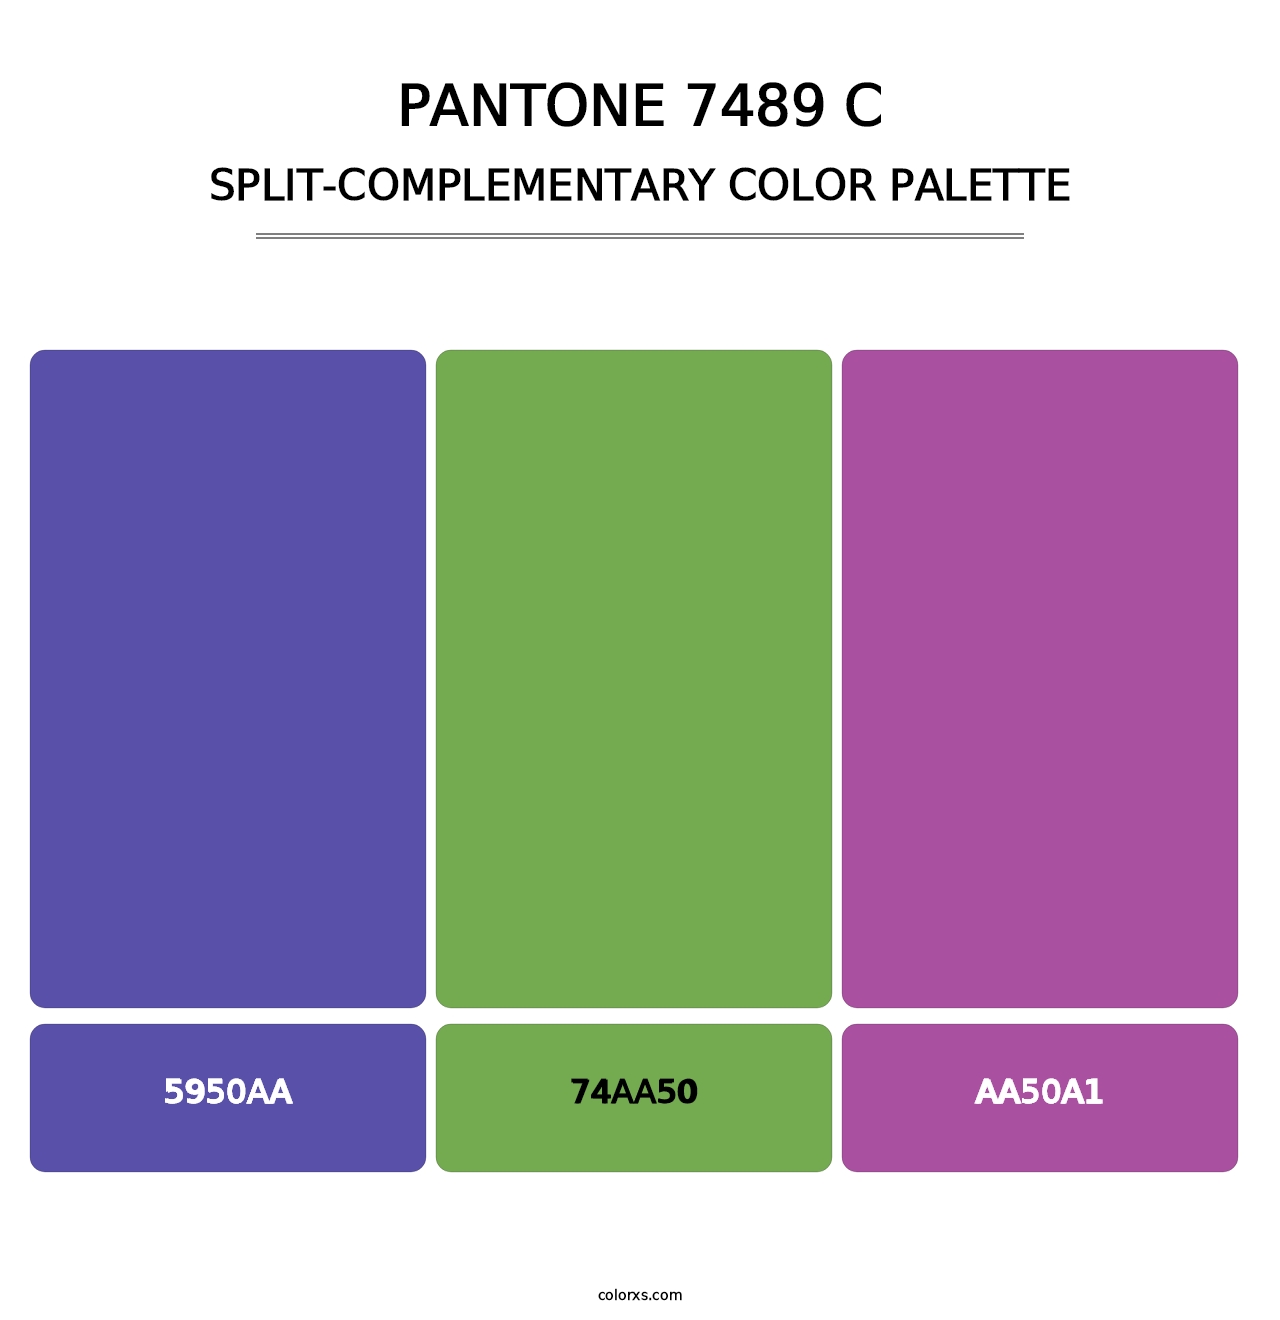 PANTONE 7489 C - Split-Complementary Color Palette